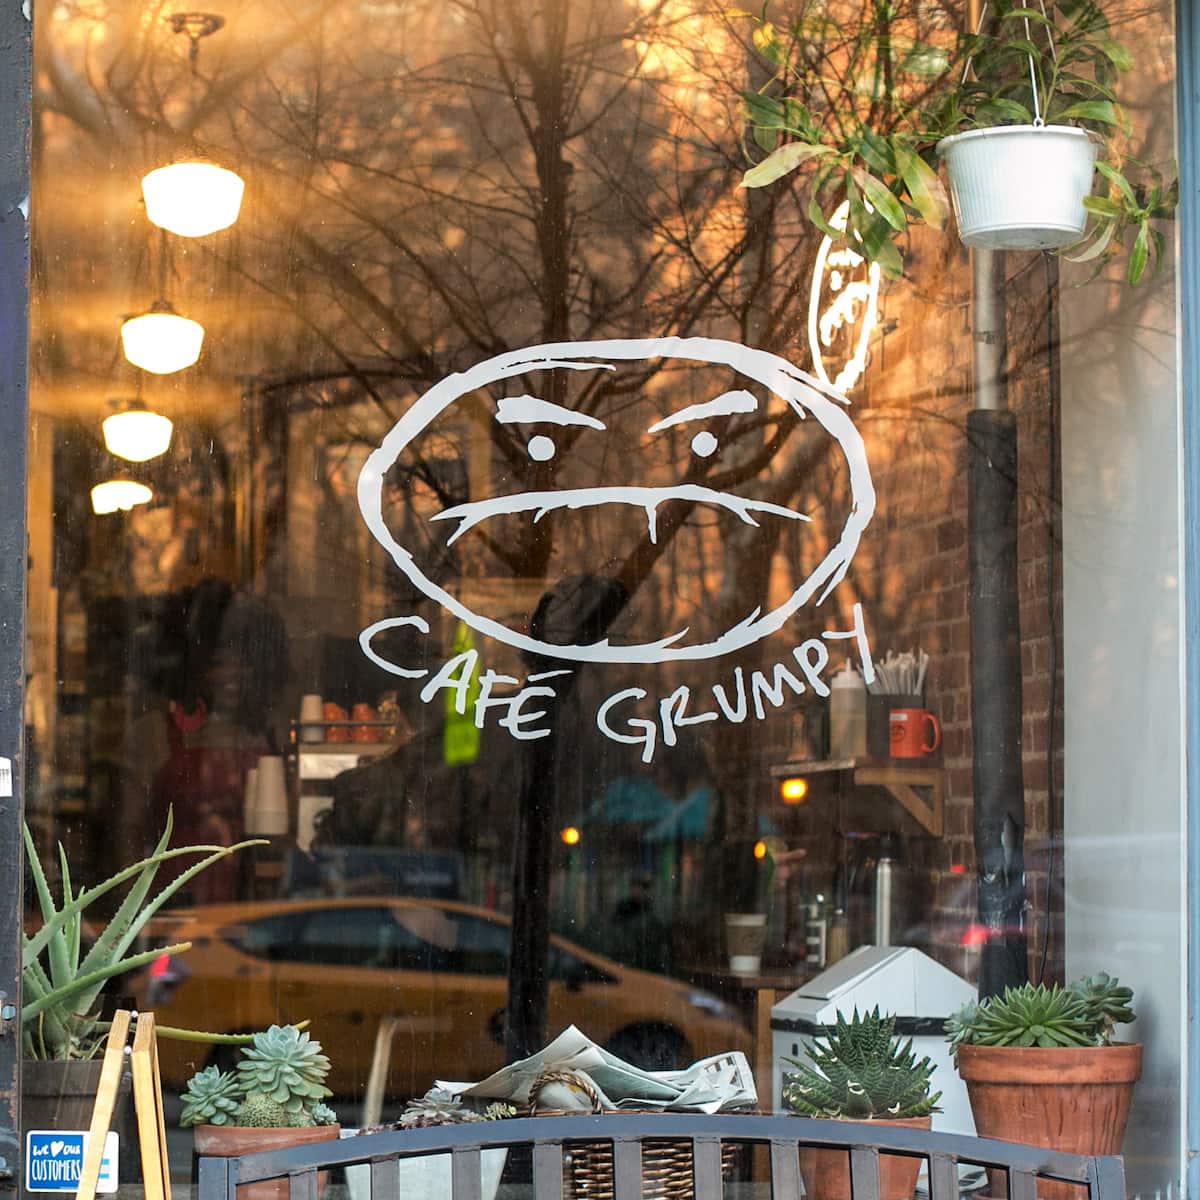 Lower East Side Cafe Grumpy